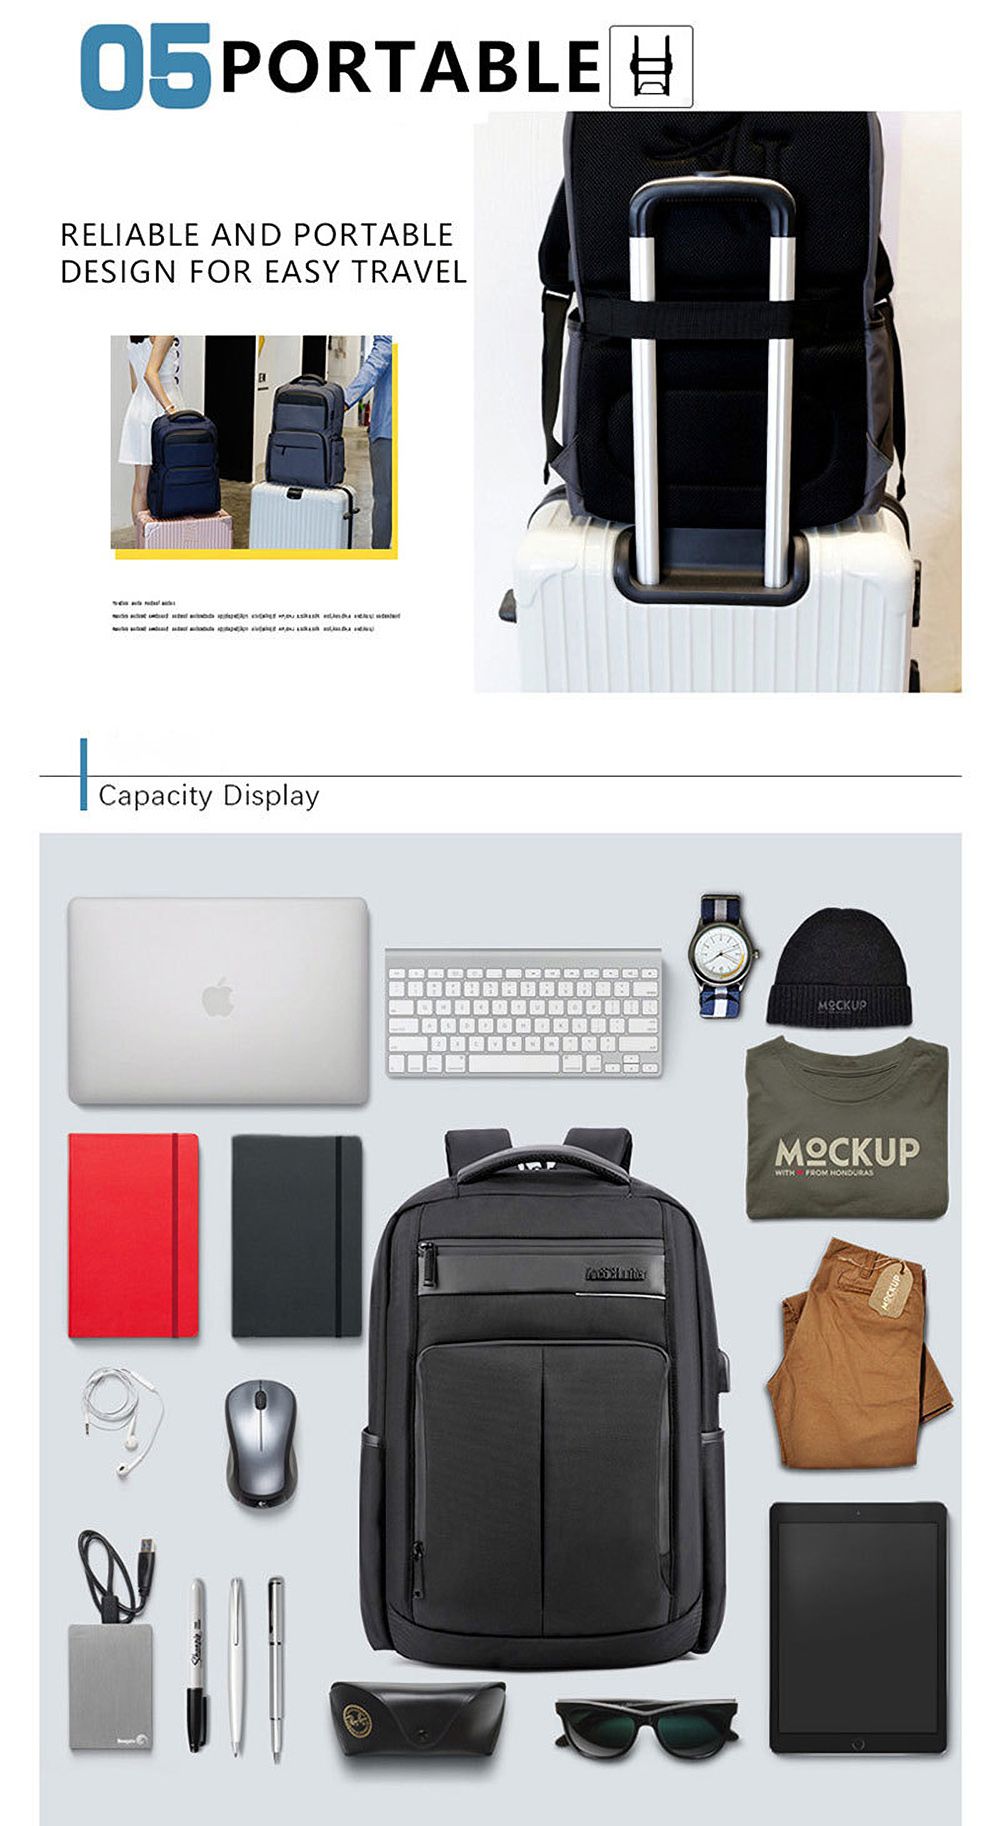 18-Inch-Backpack-USB-Charging-Laptop-Bag-Mens-Shoulder-Bag-Business-Casual-Travel-Schoolbag-B00121C-1476794